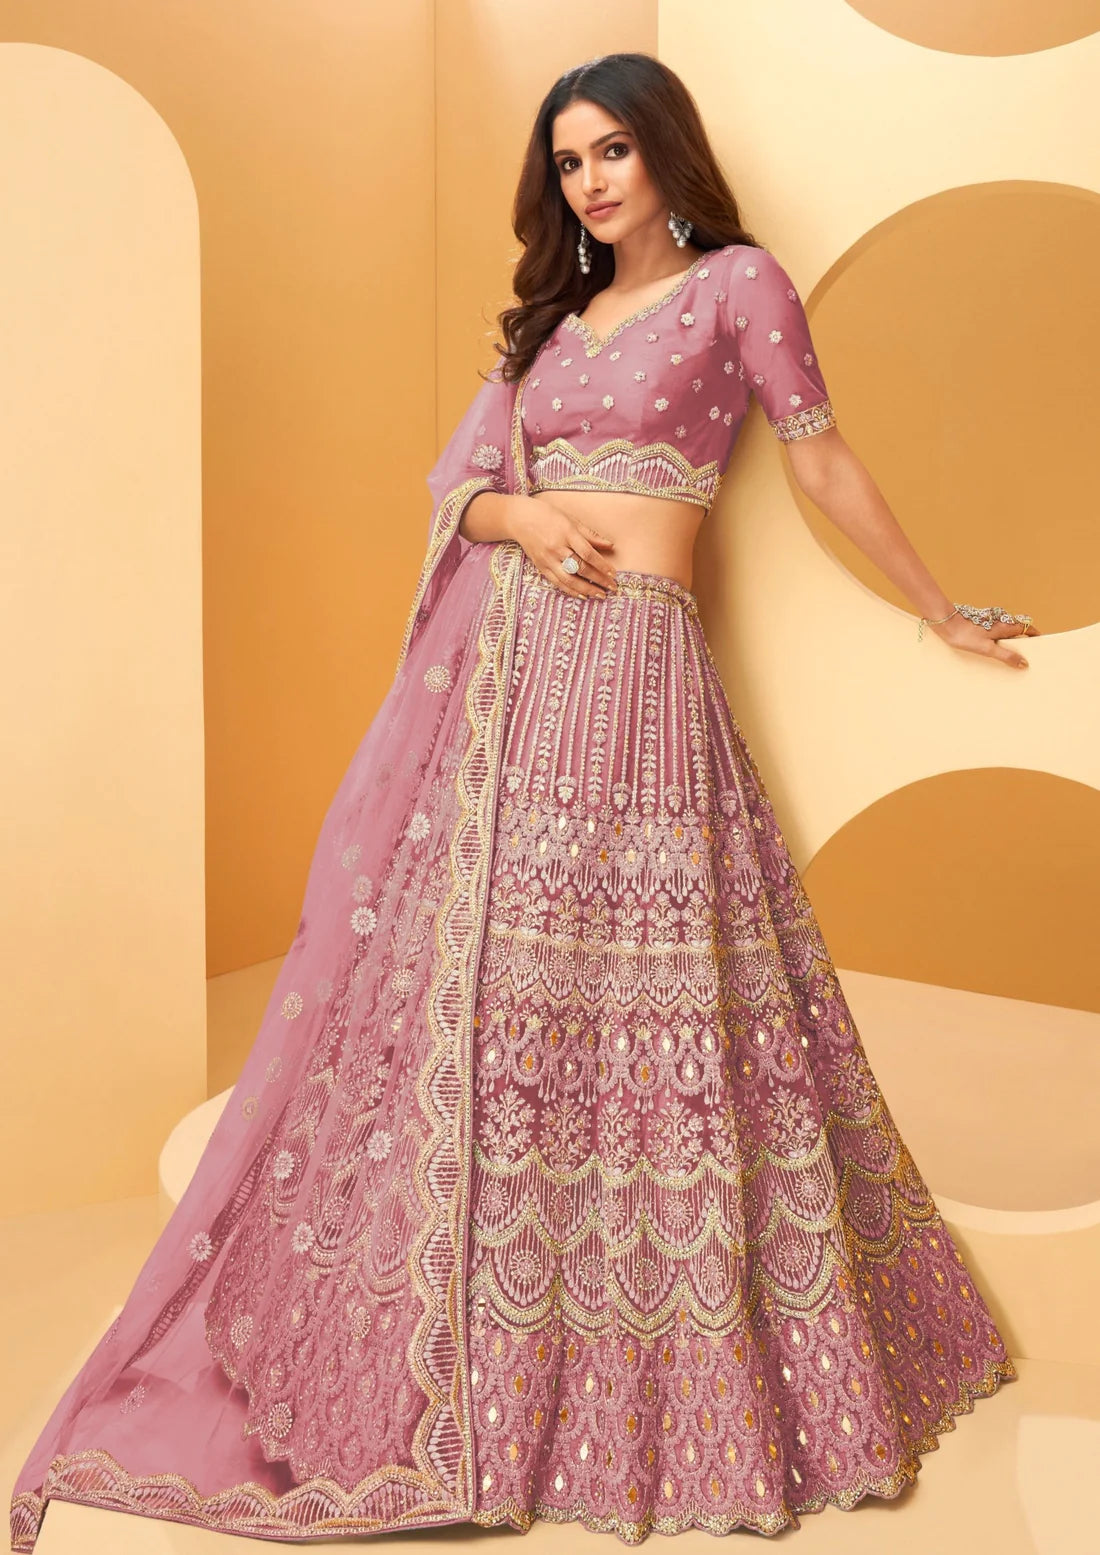 Bride in designer light pink bridal lehenga choli online shopping price usa.